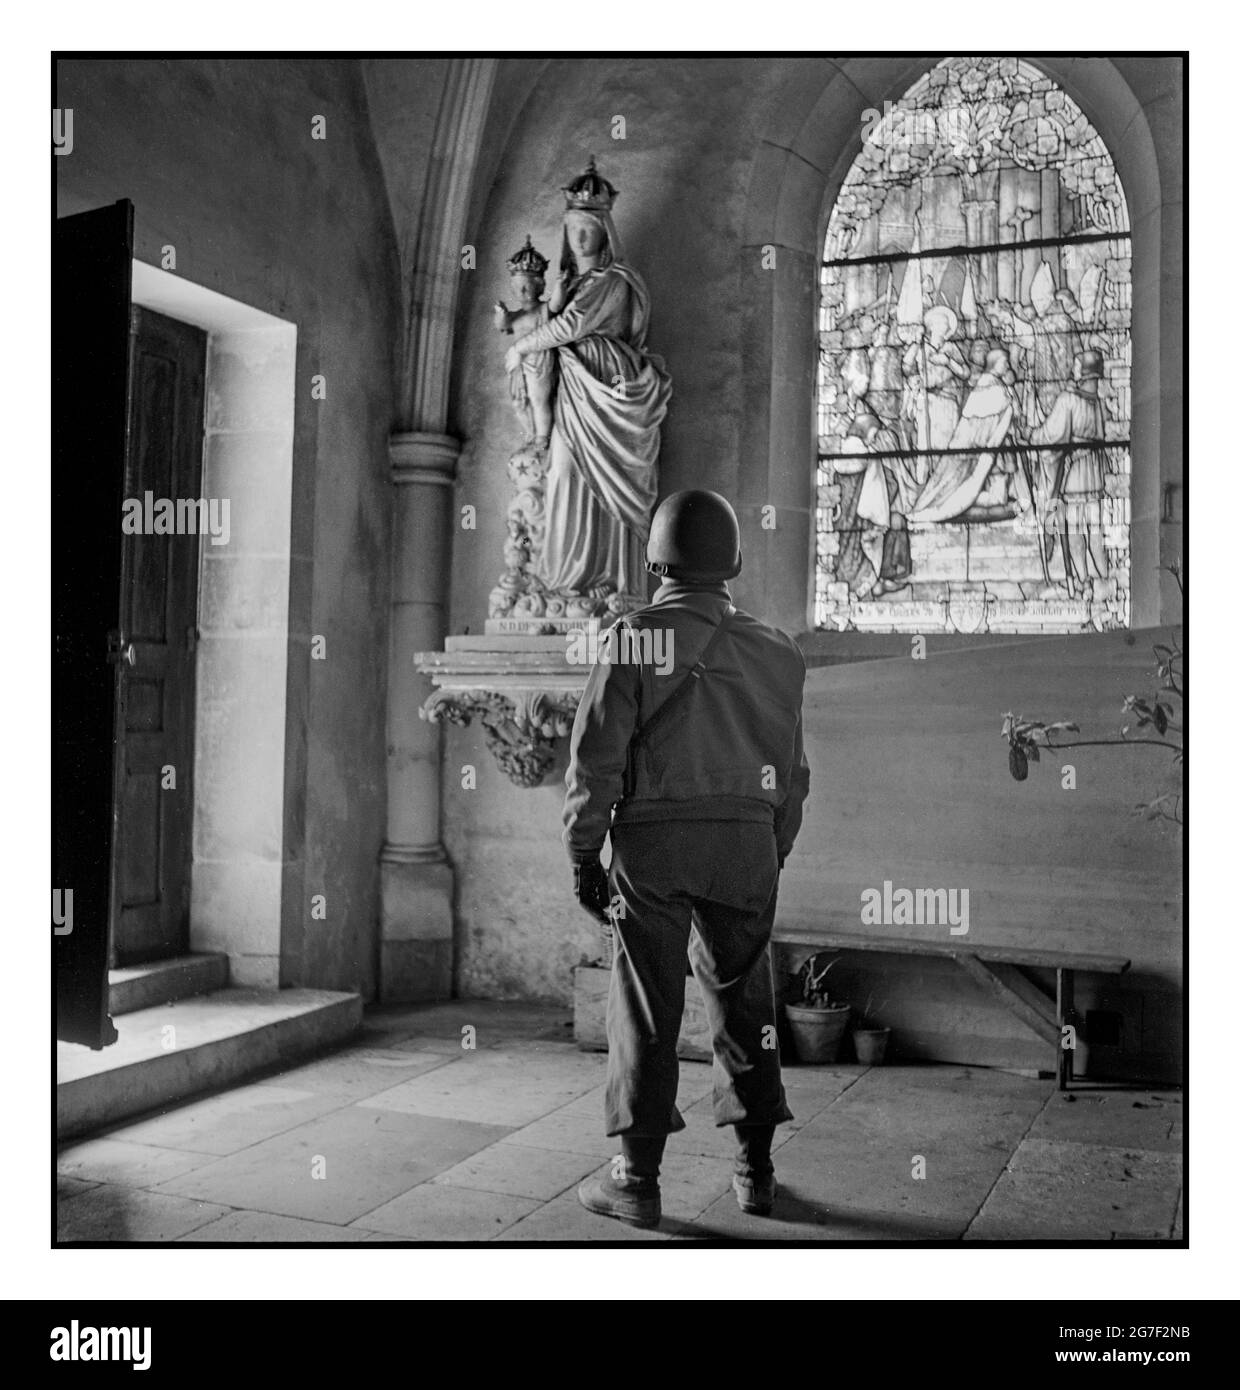 G.A. amerikanischer Soldat aus dem 2. Weltkrieg hält inne, um eine Statue der Madonna mit Kind in einer Kirche in Italien zu betrachten Europa während des 2. Weltkrieges Toni Frisell Fotograf aufgenommen zwischen 1940 und 1945 - Weltkrieg, 1939-1945--Religiöse Aspekte Kirchen--Europa--1940-1950, Soldaten--Europa-1940-1950 Stockfoto